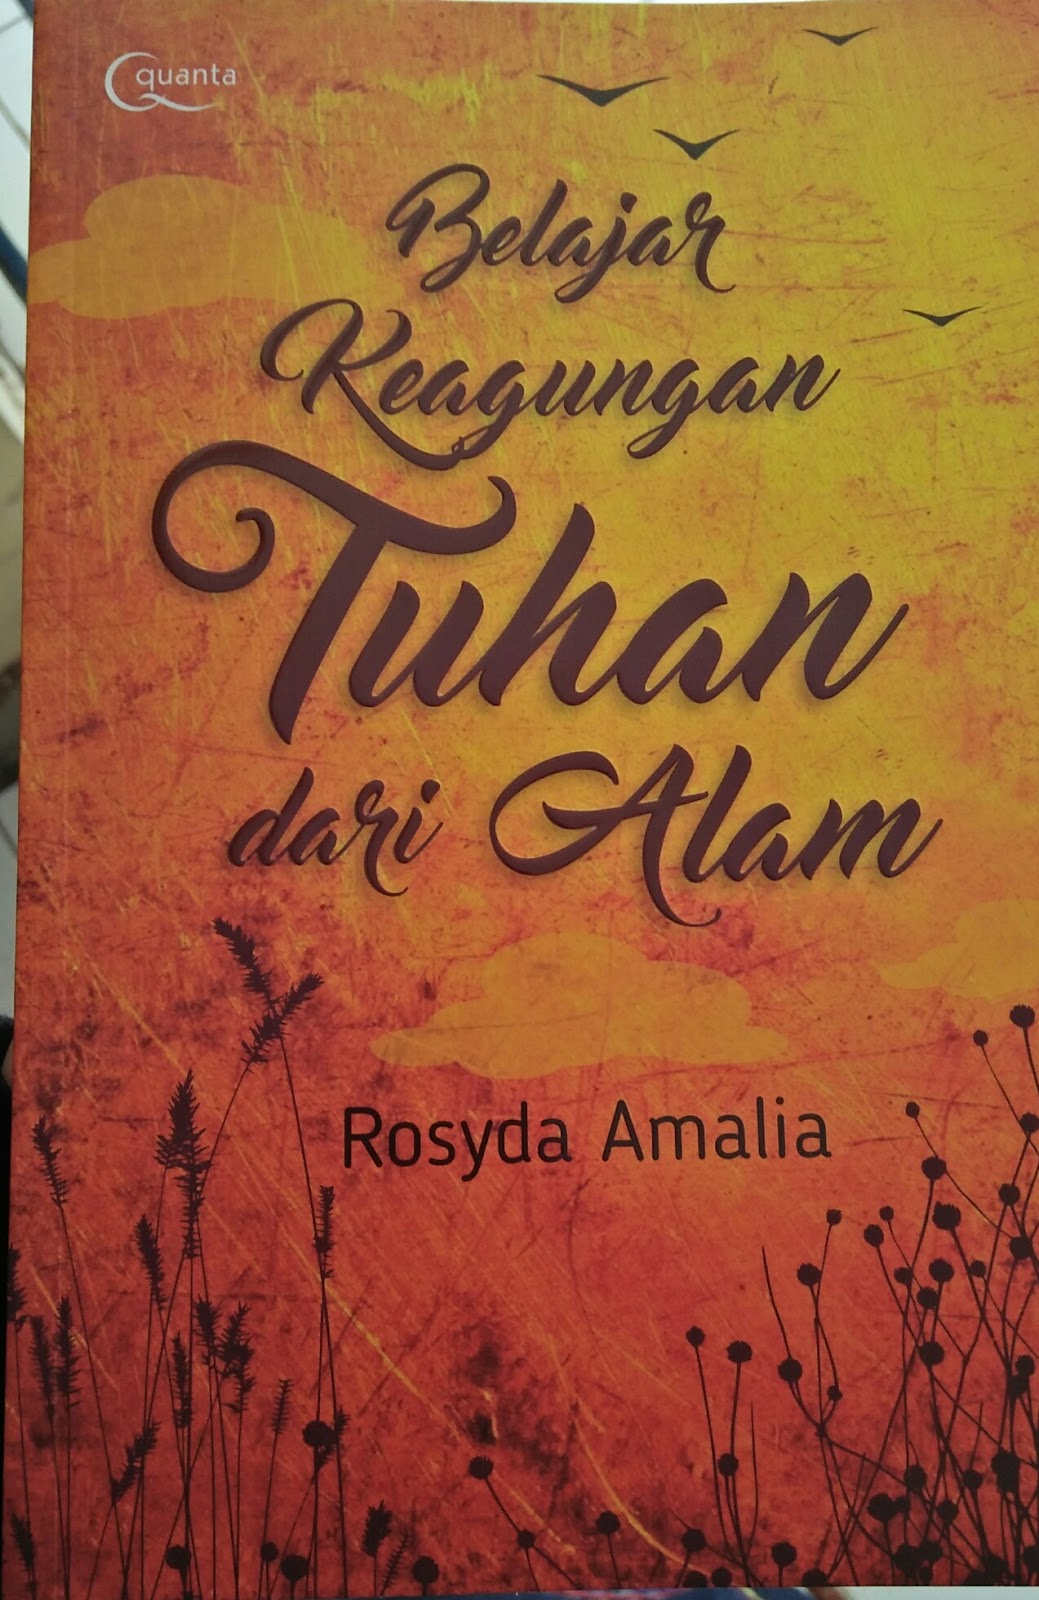 Resensi Buku Motivasi Islami Belajar Keagungan Tuhan Dari Alam Karya Rosyda Amalia